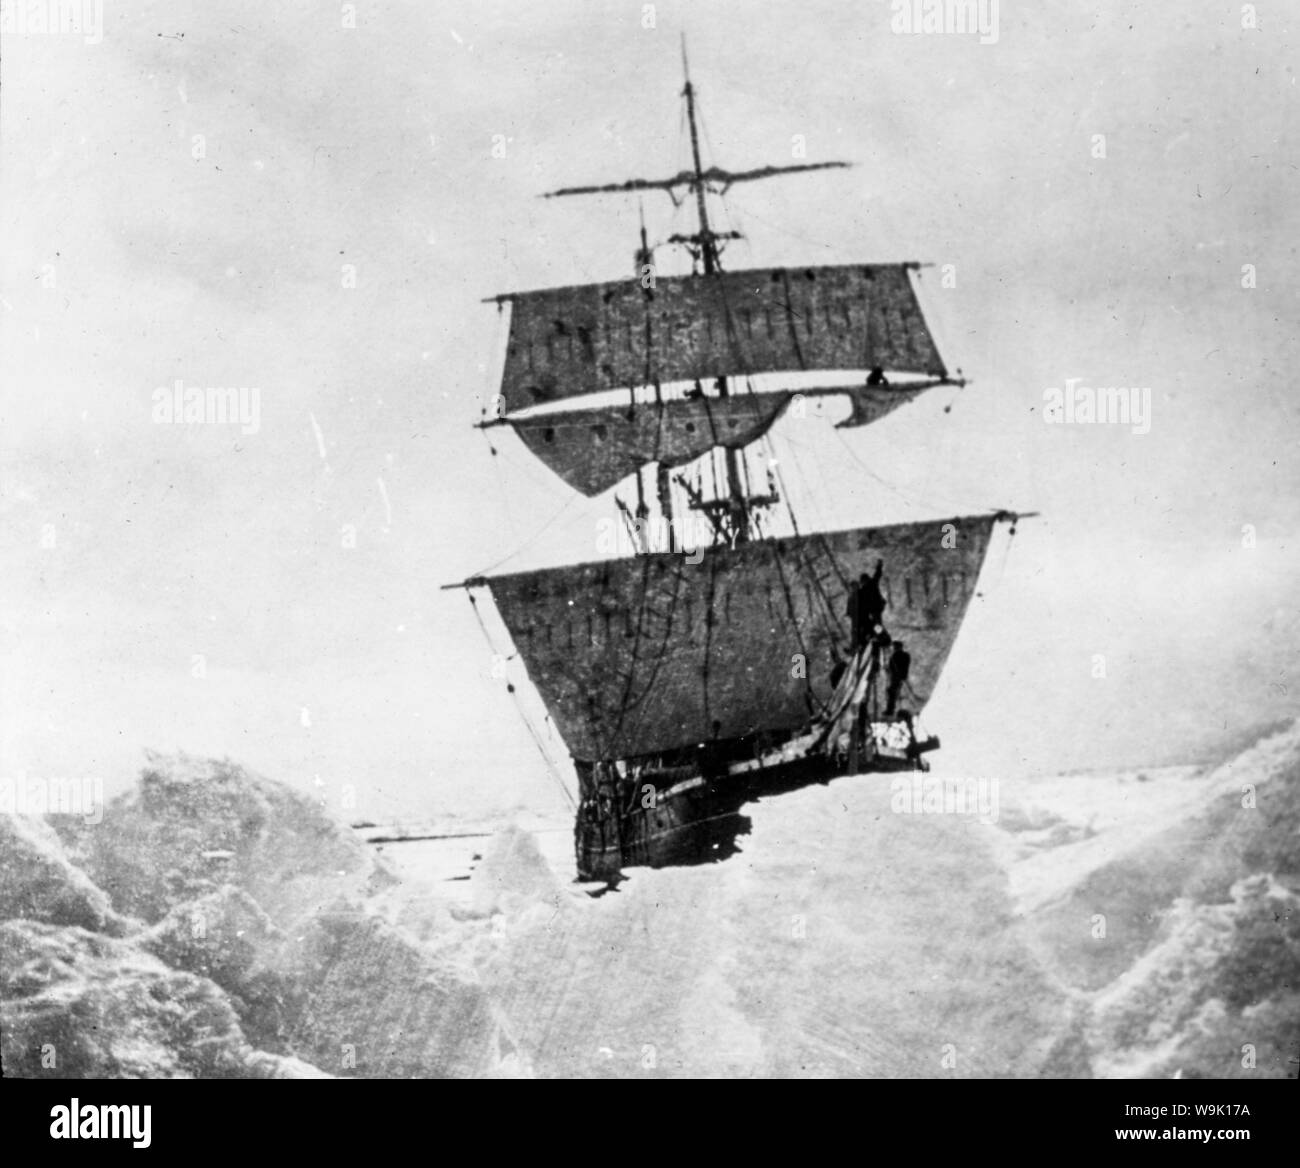 Le Nimrod, Ernest Shackleton's ship a tenu jusqu'à la glace sur l'expédition britannique de l'Antarctique au Pôle Sud en 1908-1909, photographie Banque D'Images